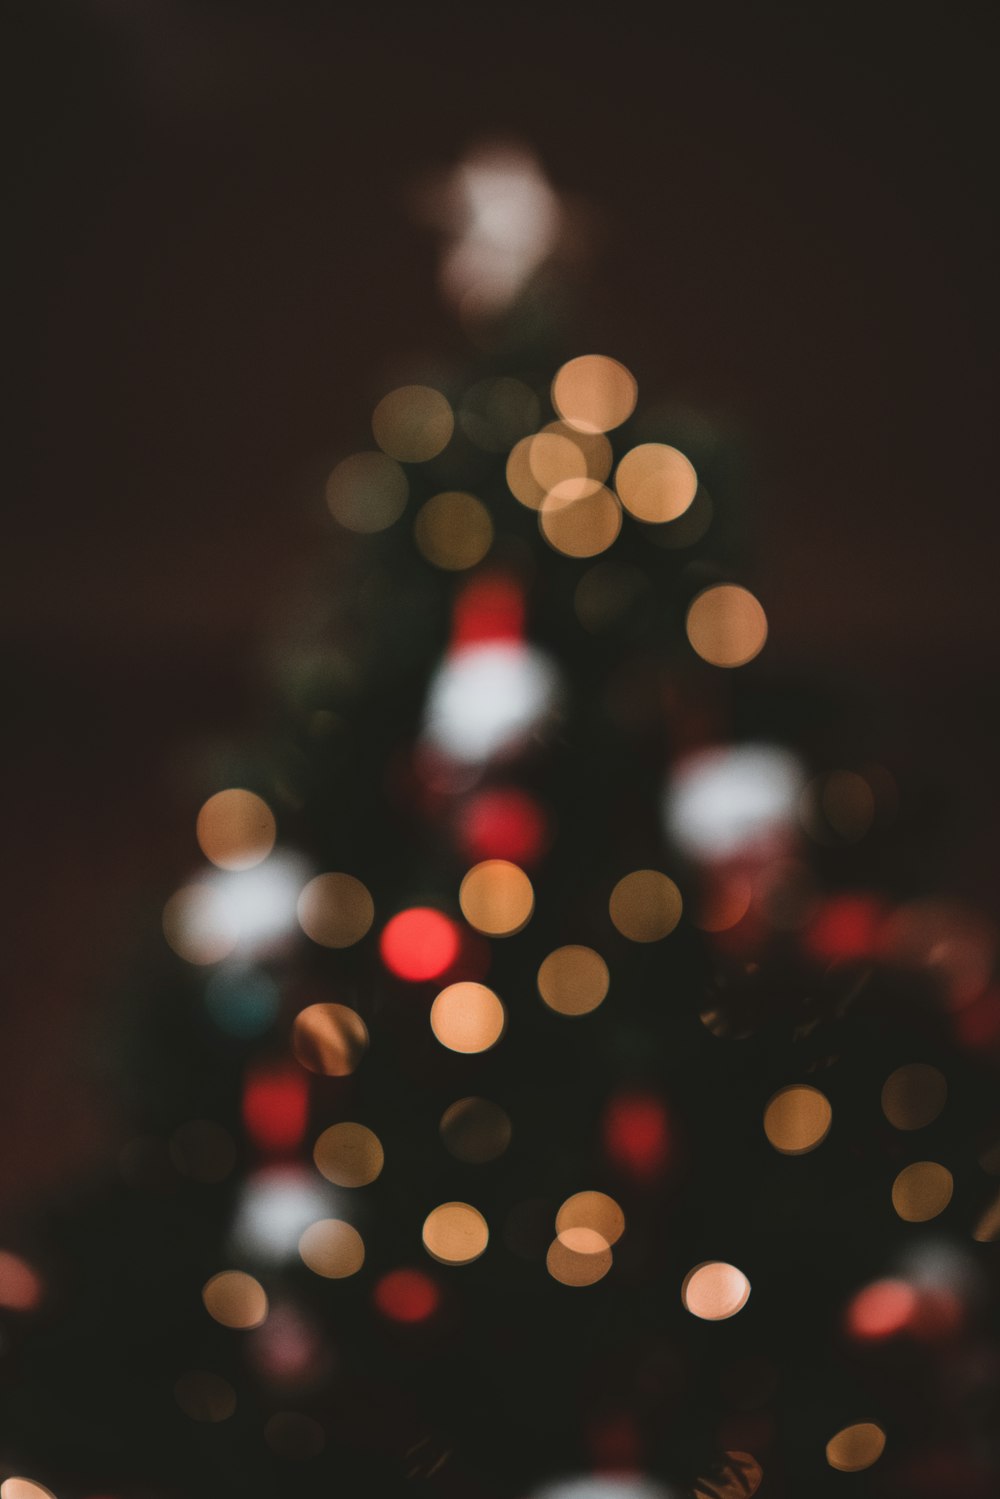 fotografía bokeh del árbol de Navidad con luces